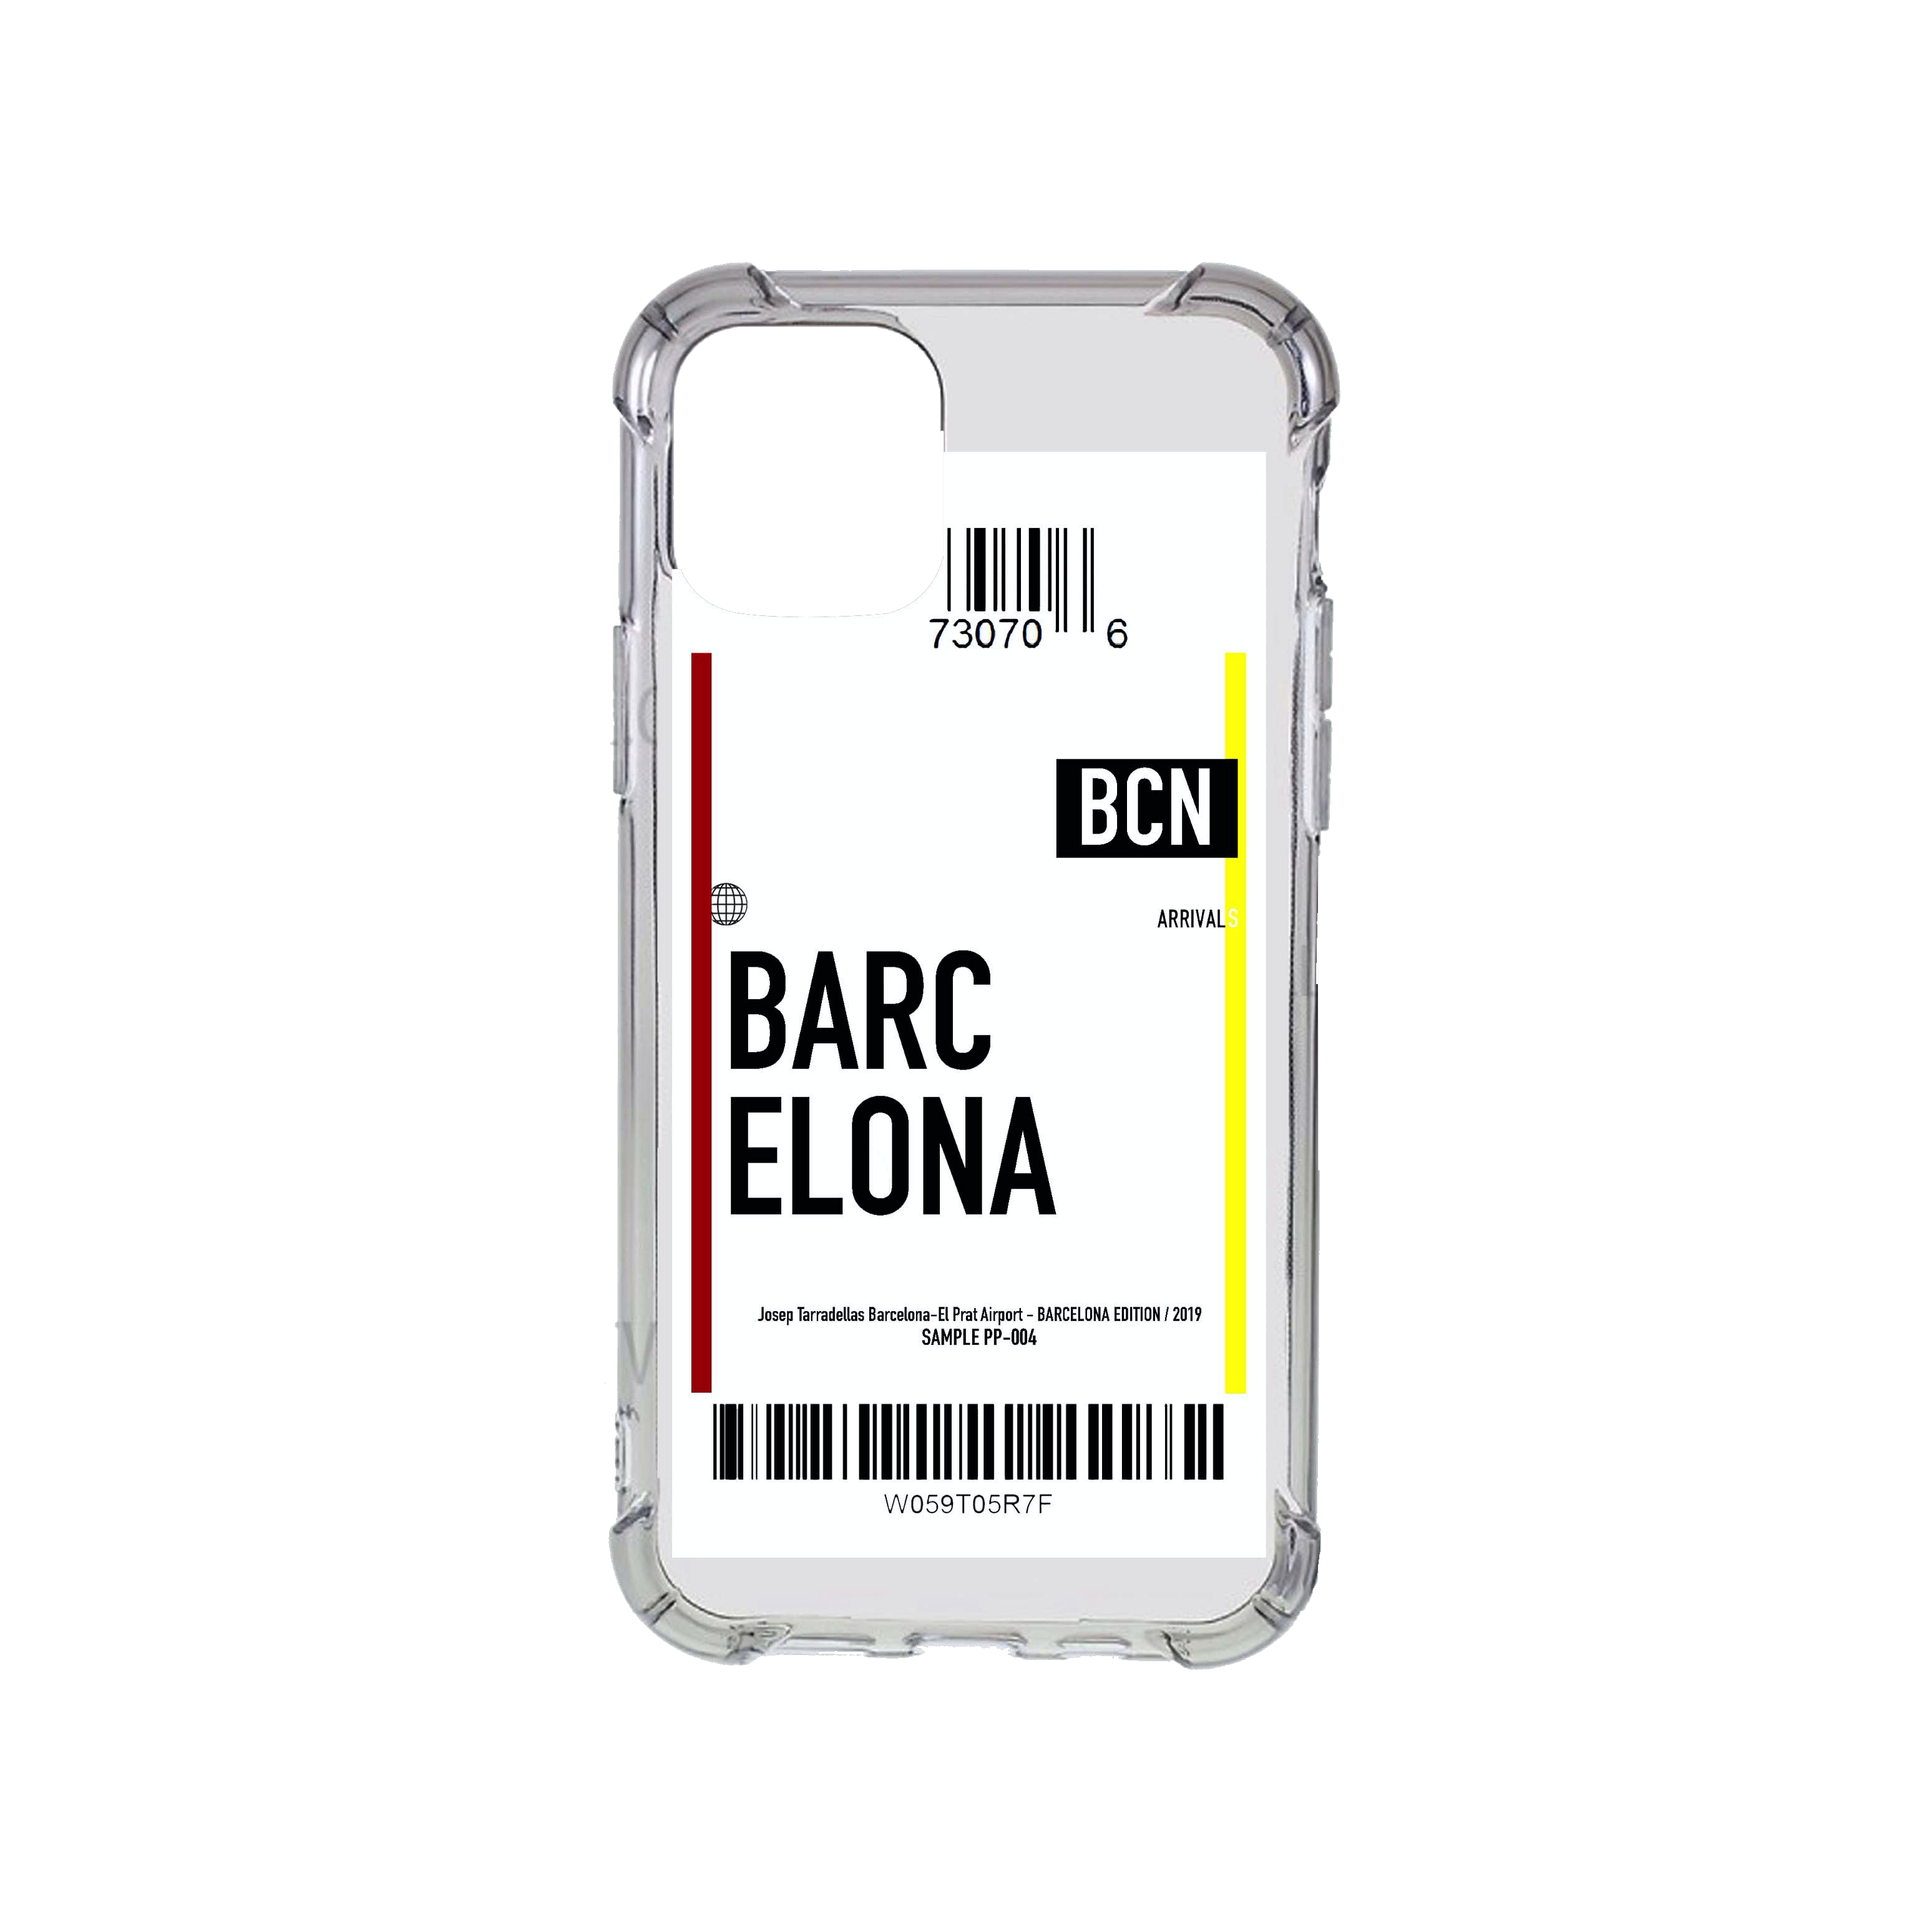 Barcelona Flight Ticket